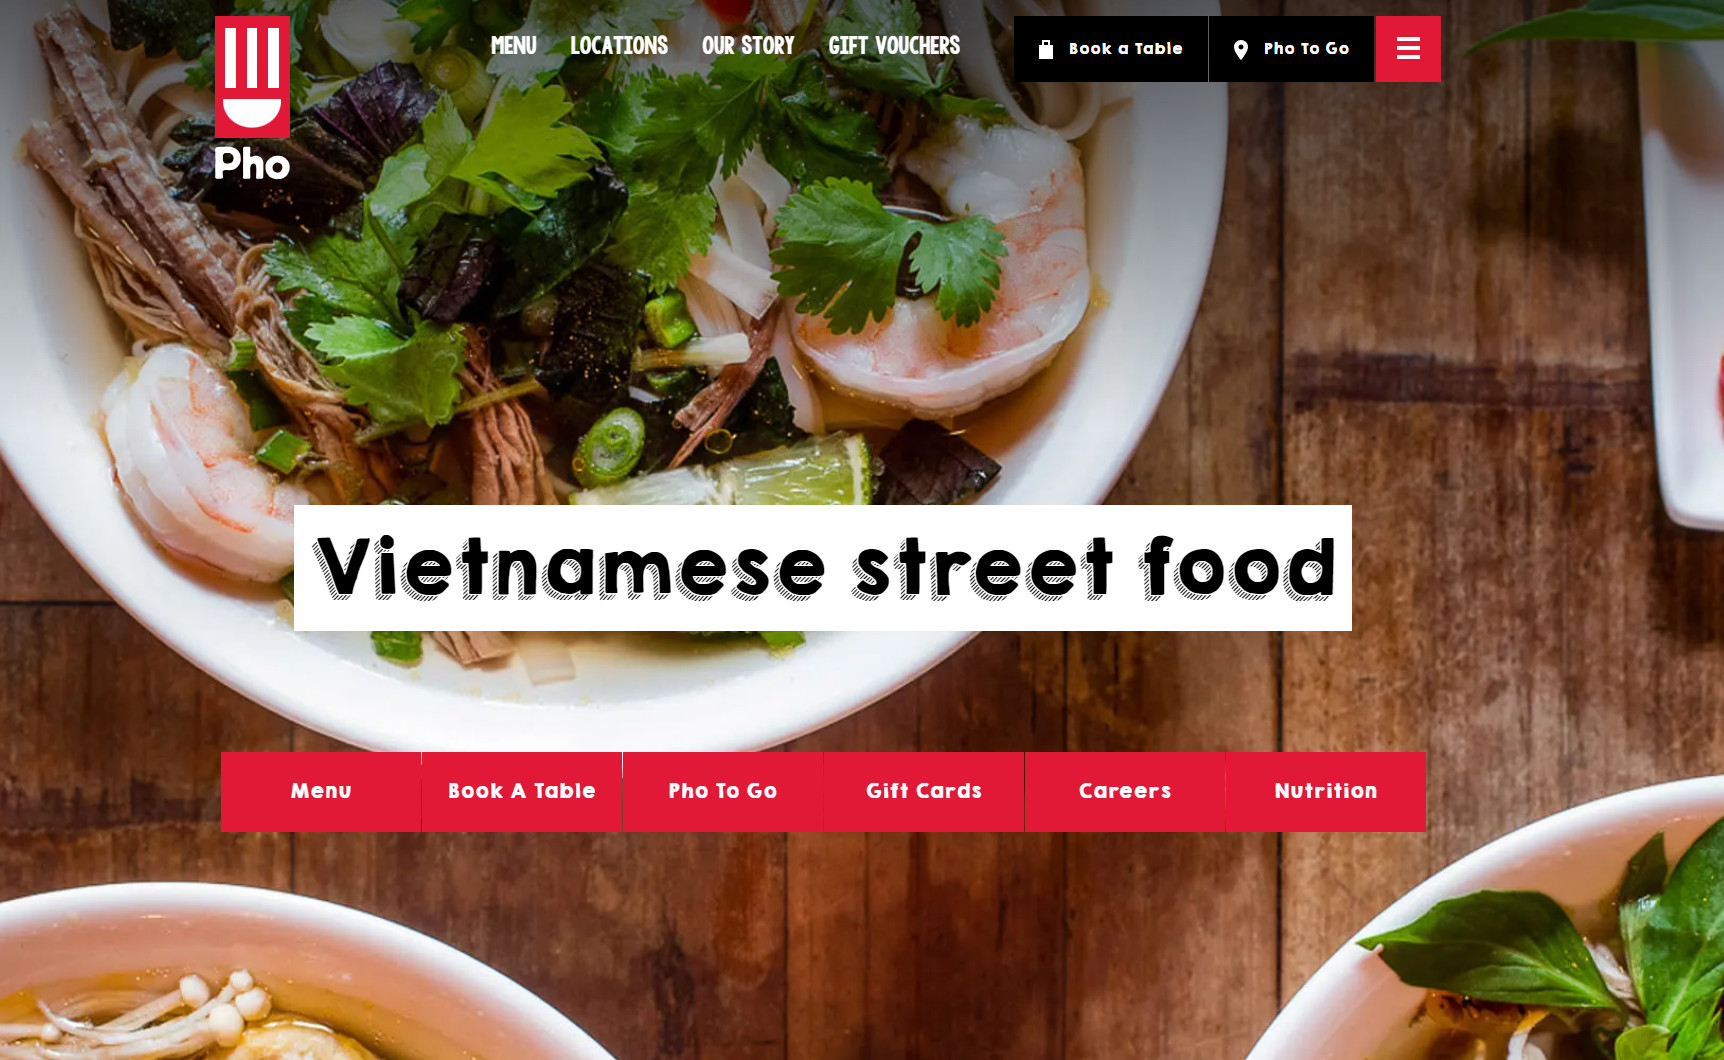 An example of a restaurant website for Vietnamese restaurants